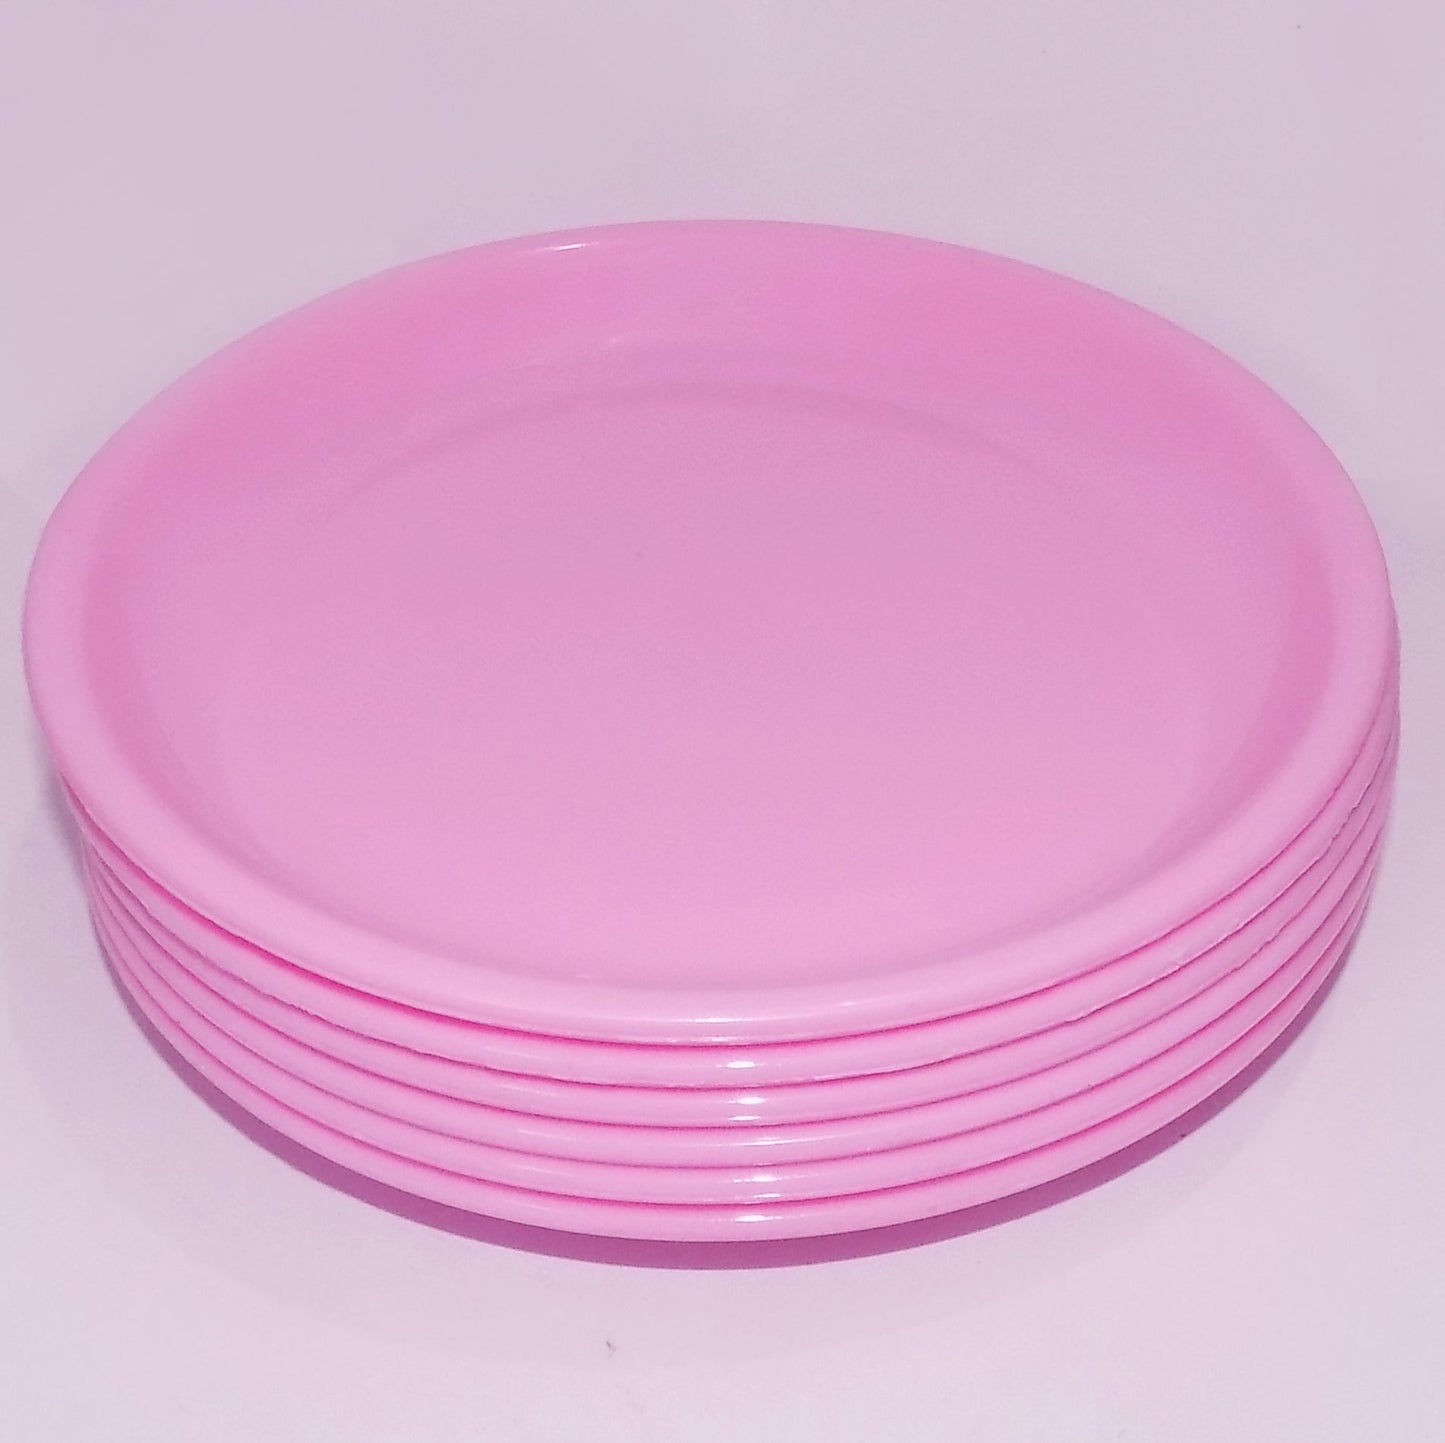 2185 Round Shaped Mini Soup Plates/Dishes - 6 pcs 